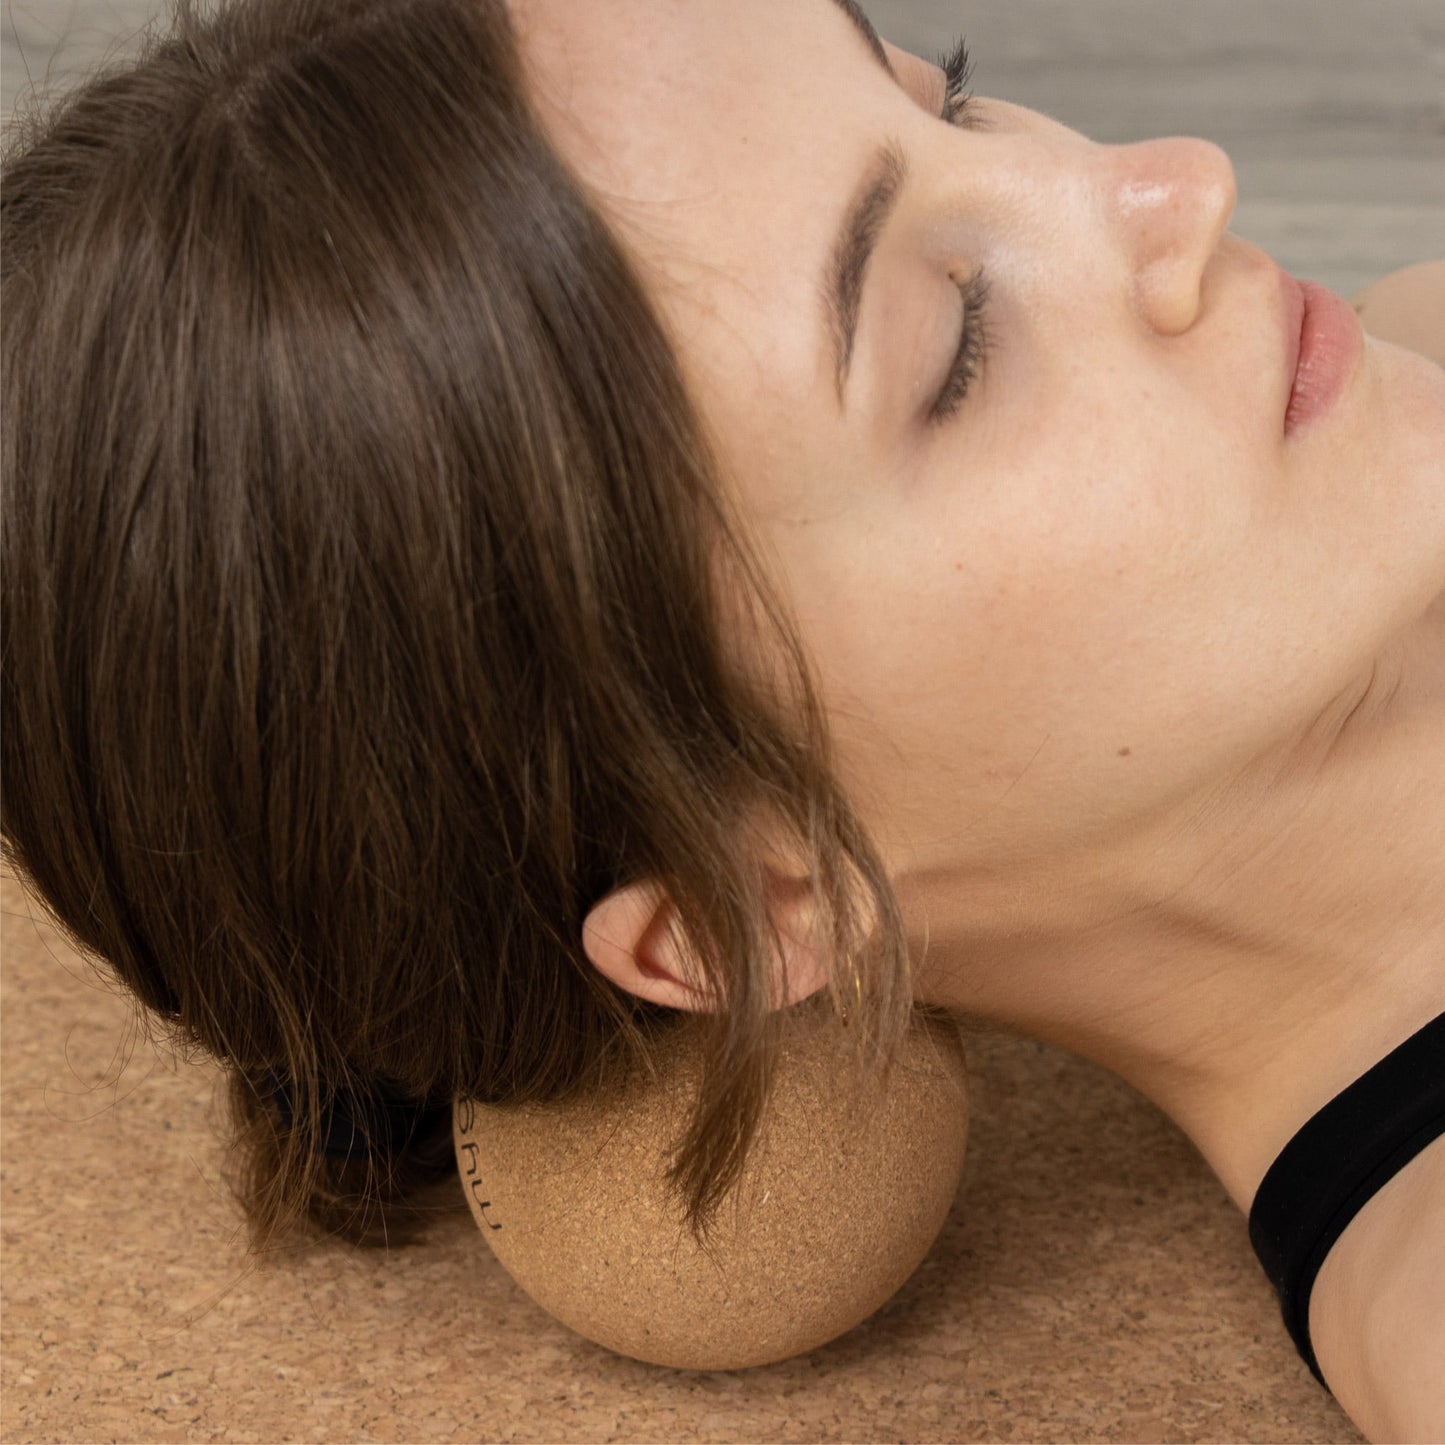 Cork Massage Ball 10cm